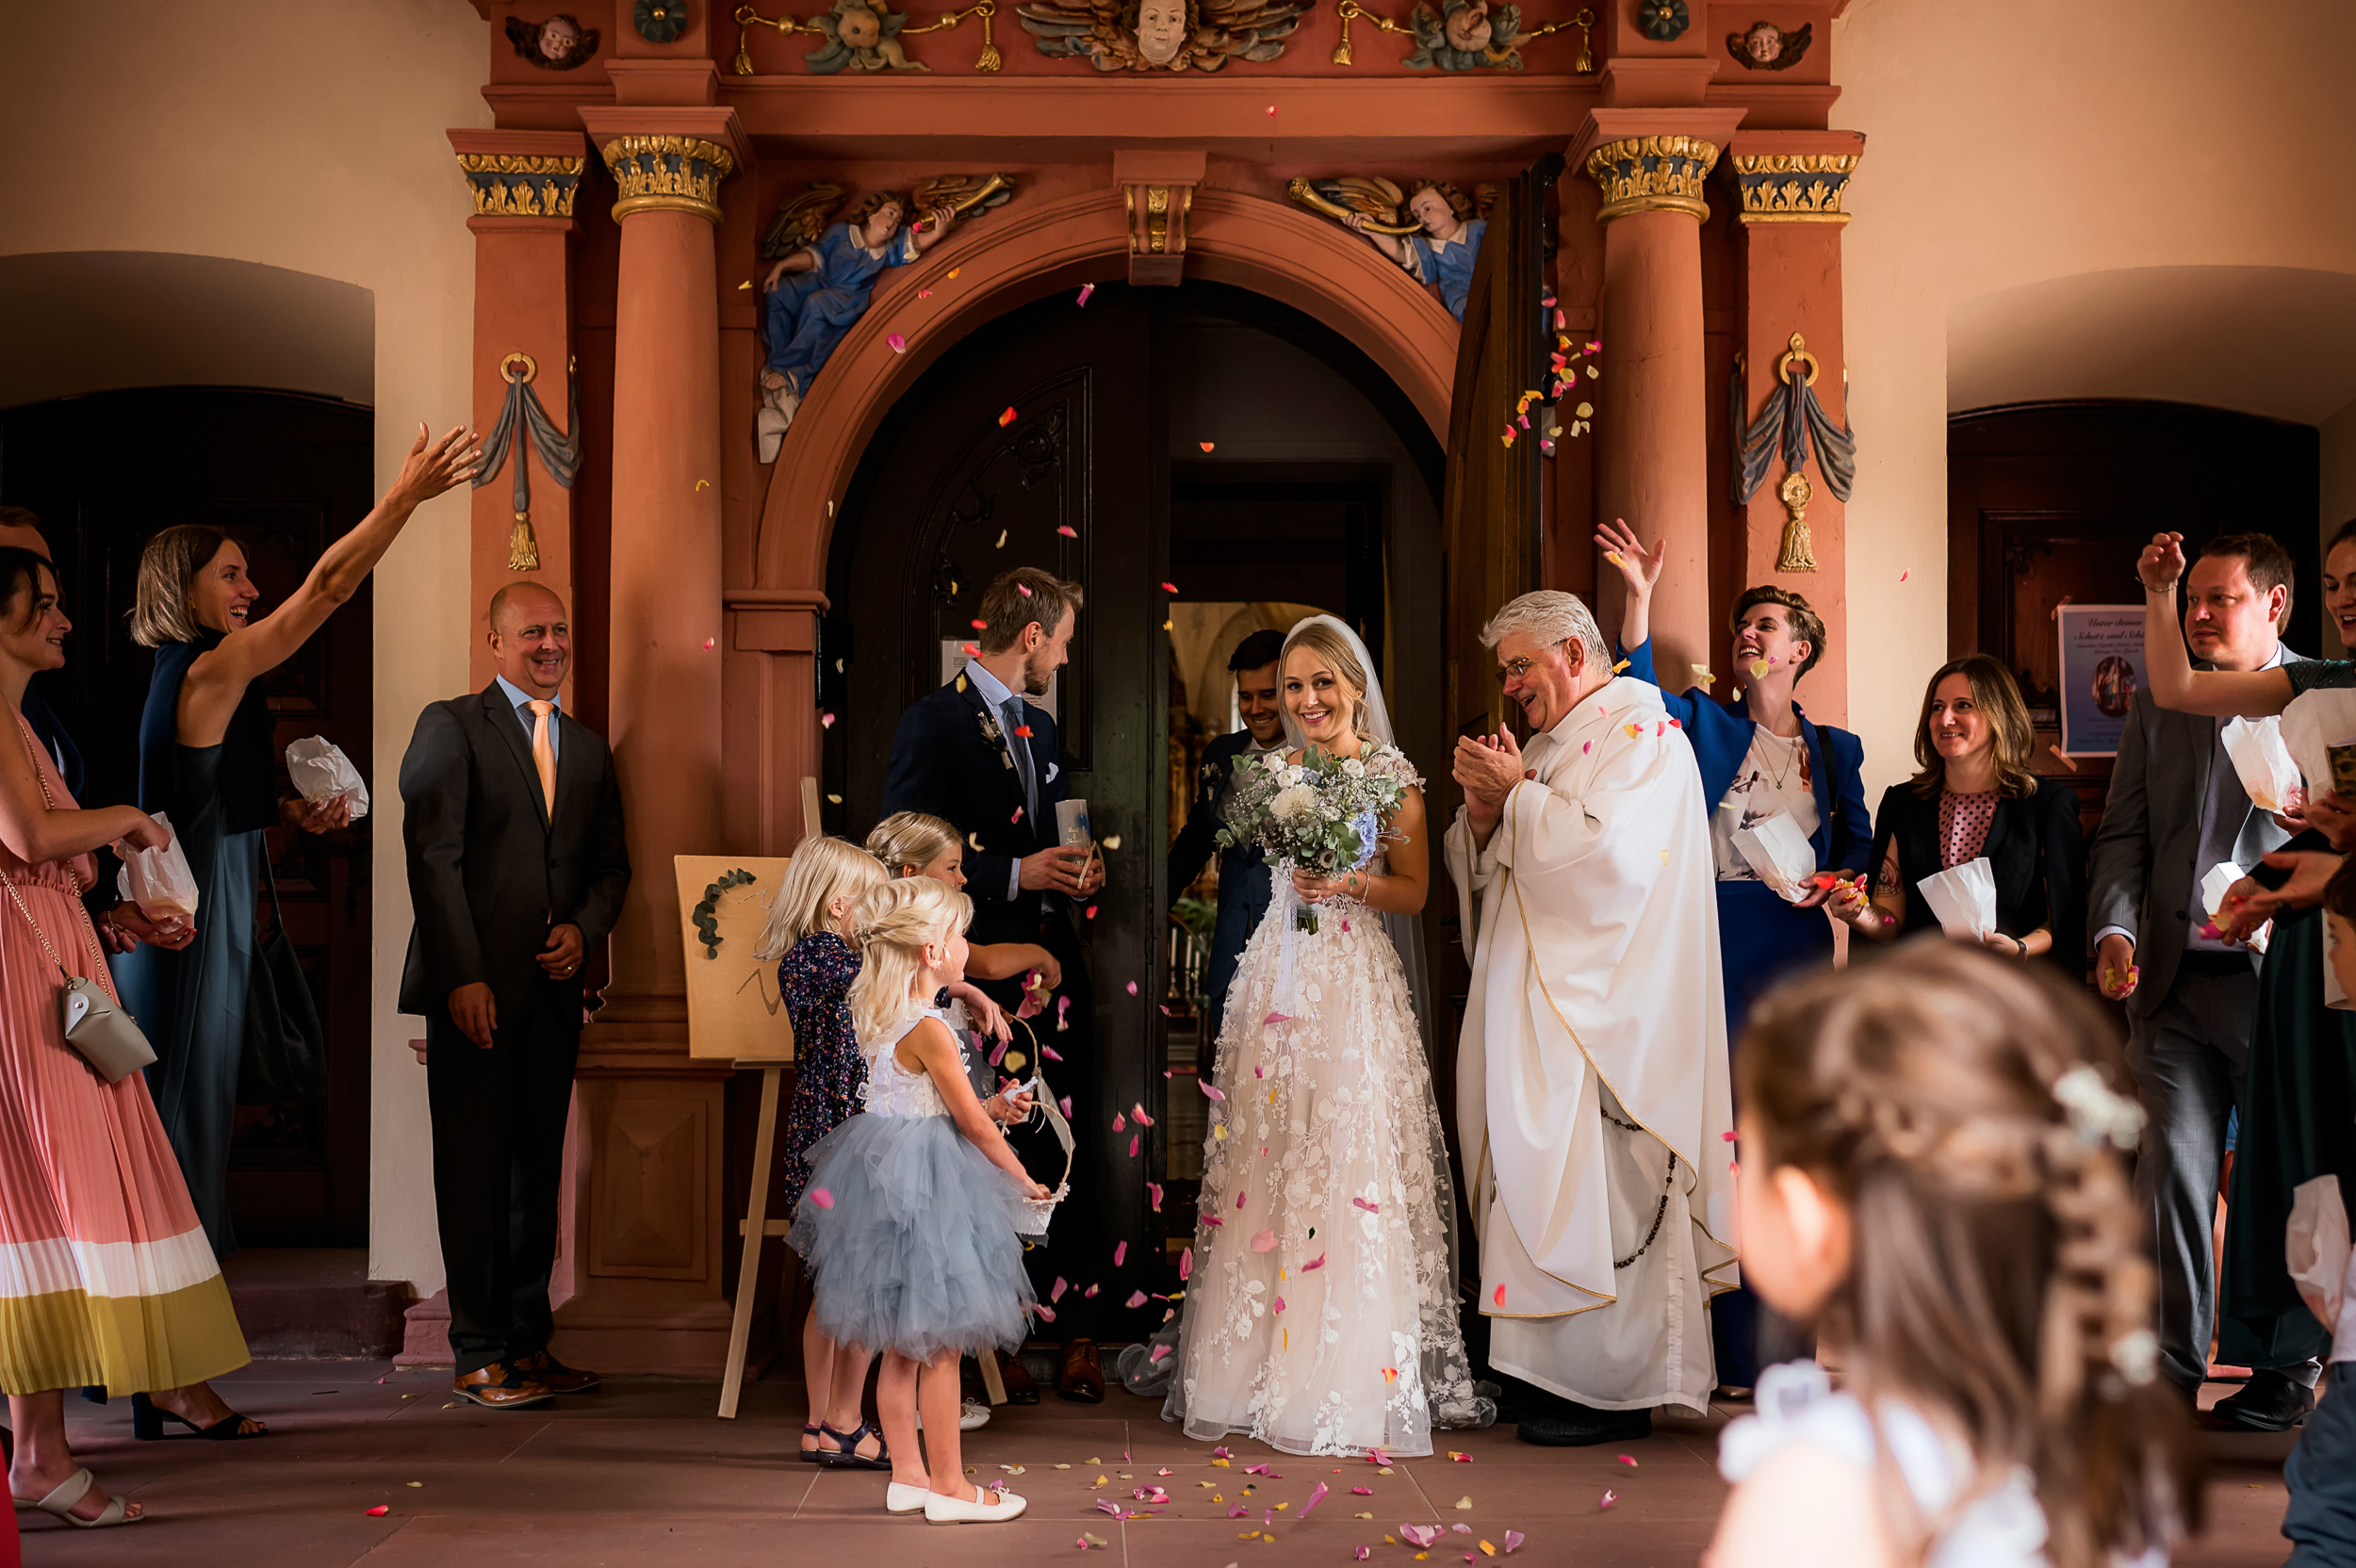 Brautpaar verlässt mit verbundenen Händen die Wallfahrtskirche in Todtmoos, während die Hochzeitsgäste Rosenblüten werfen.